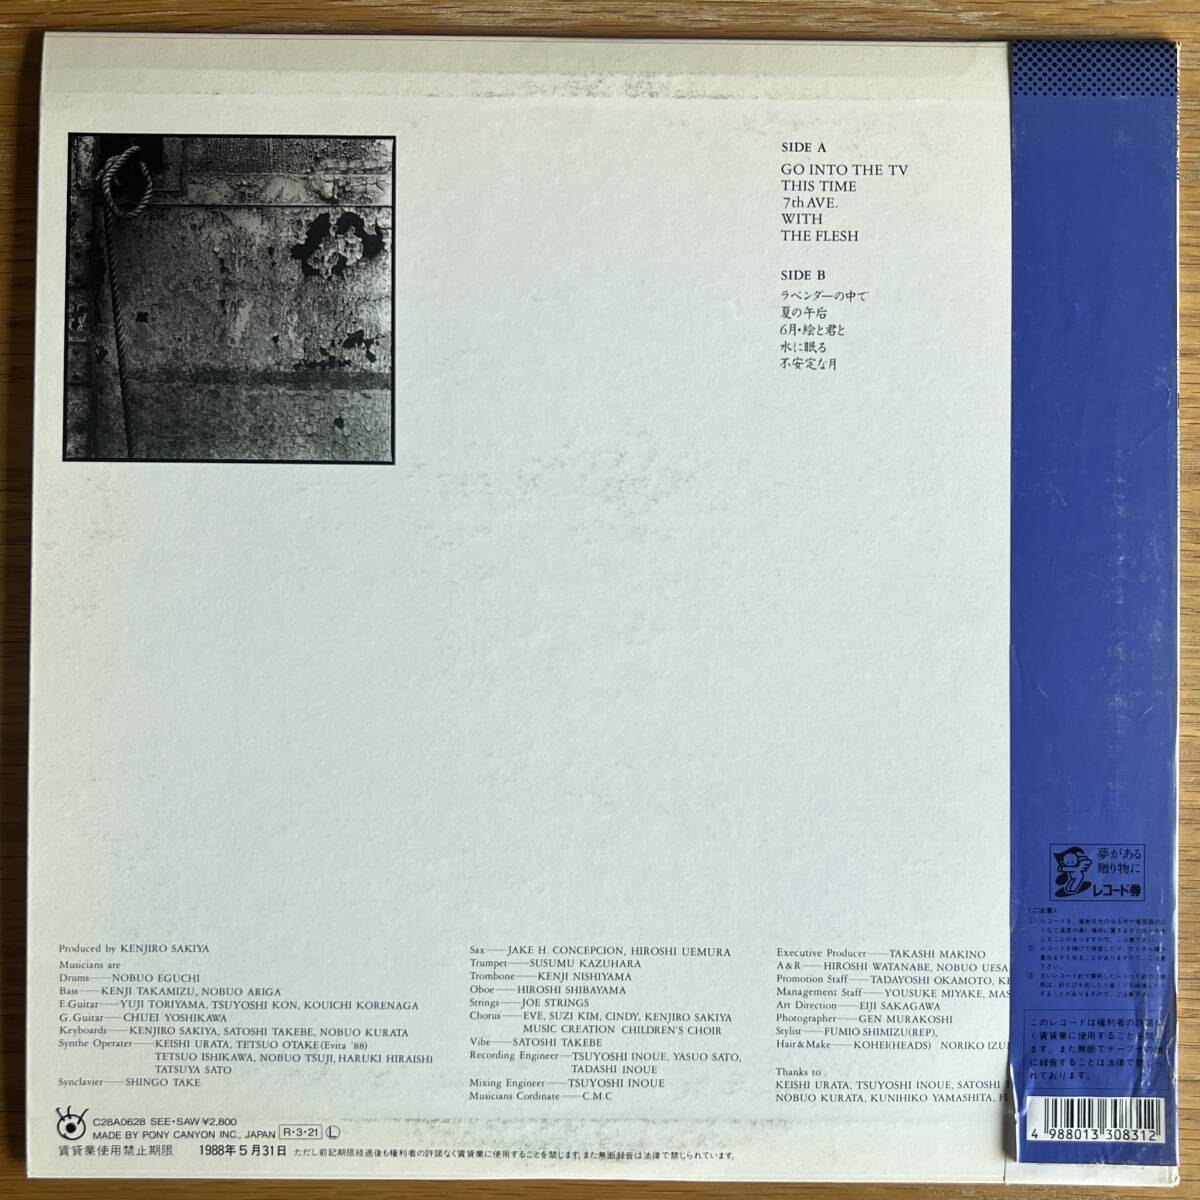 崎谷健次郎 Realism 国内オリジナル盤 LP 帯付き 和モノ シティポップ CITY POP 1988 PONY CANYON C28A0628_画像2